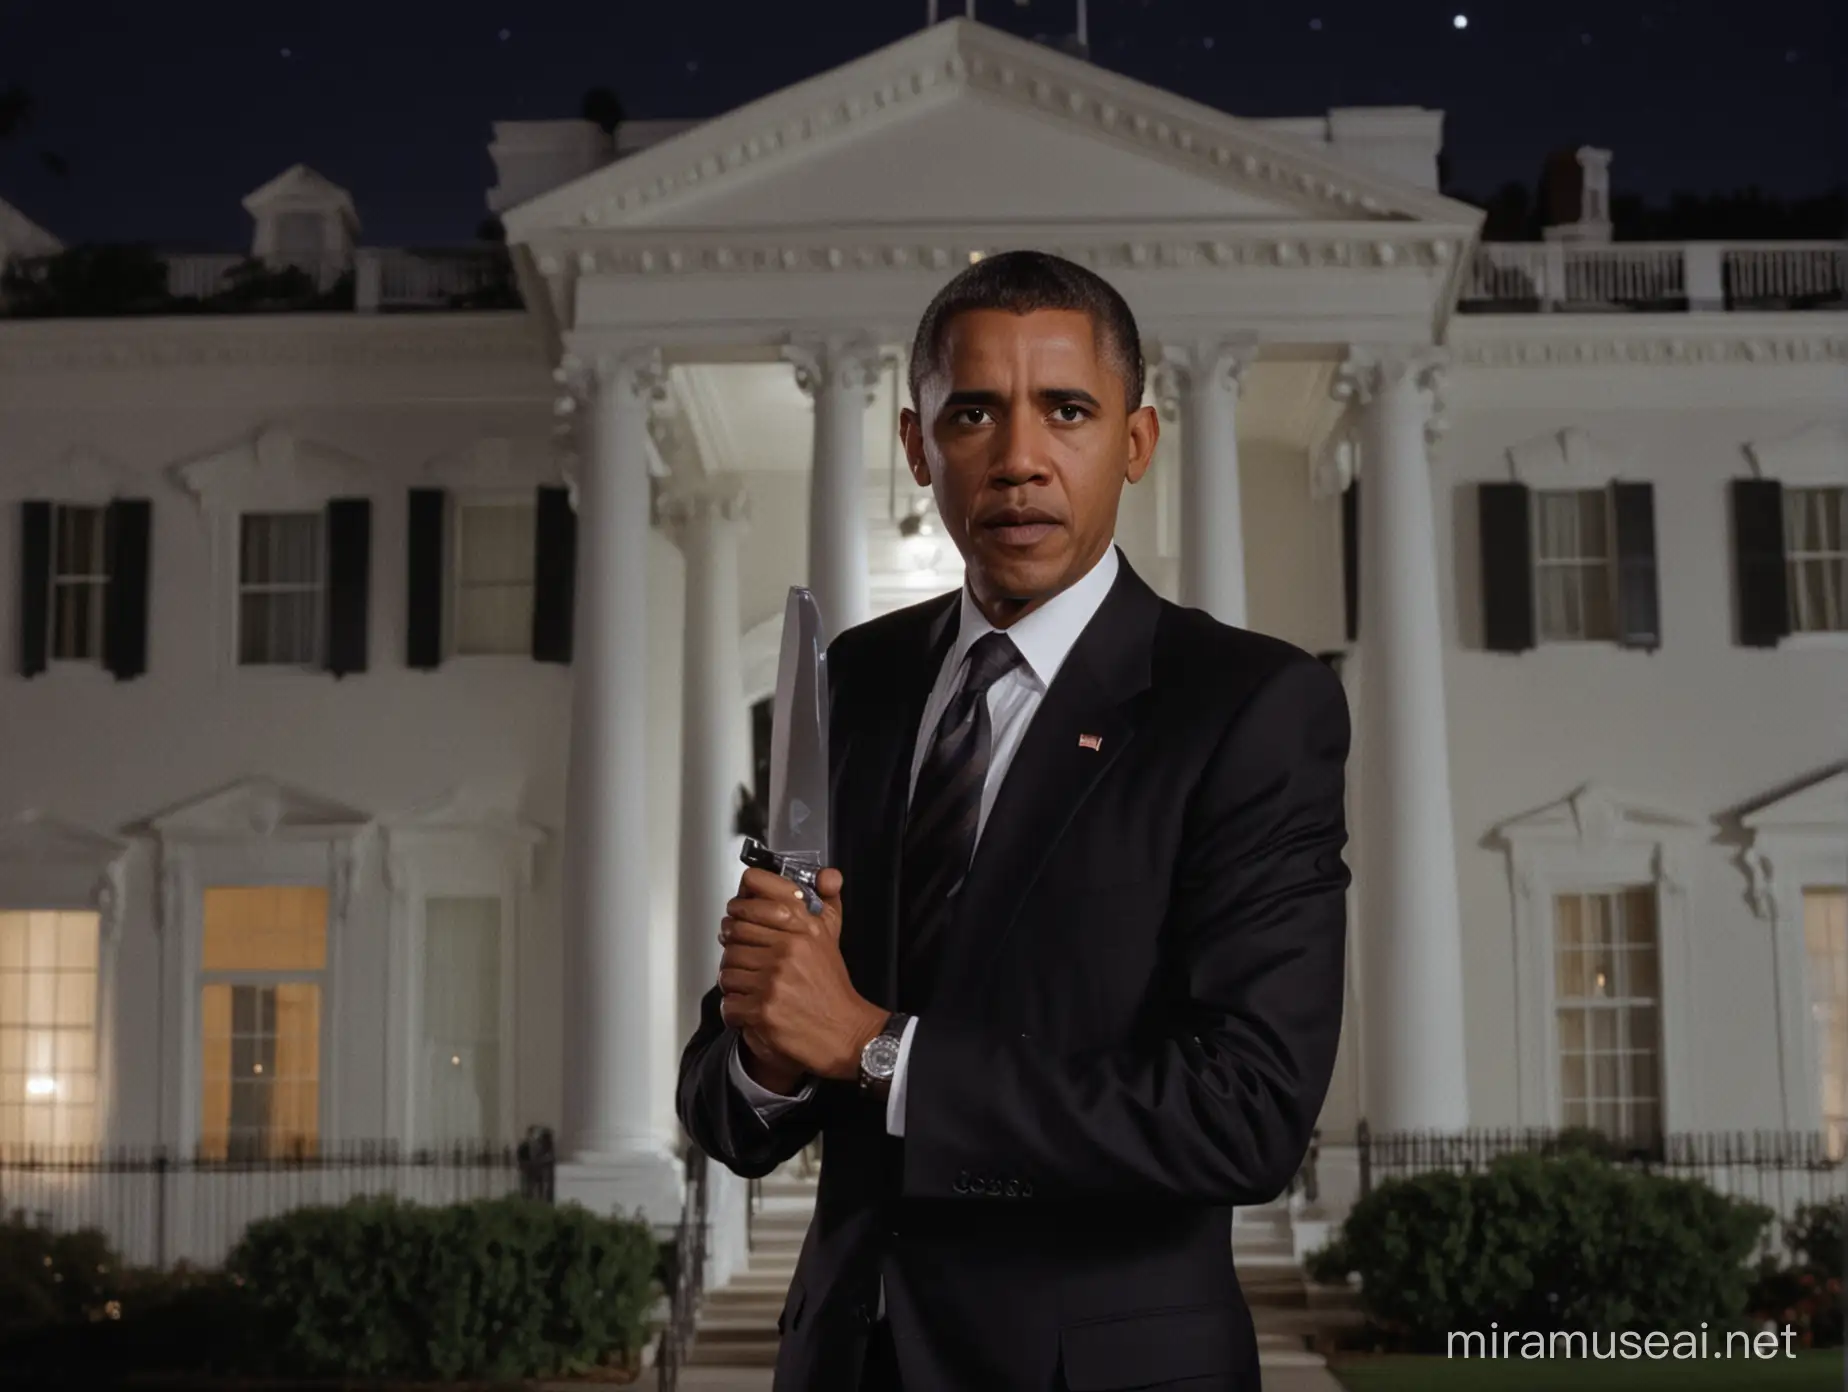 Barack Obama Horror Film Scene Nighttime Encounter at the White House